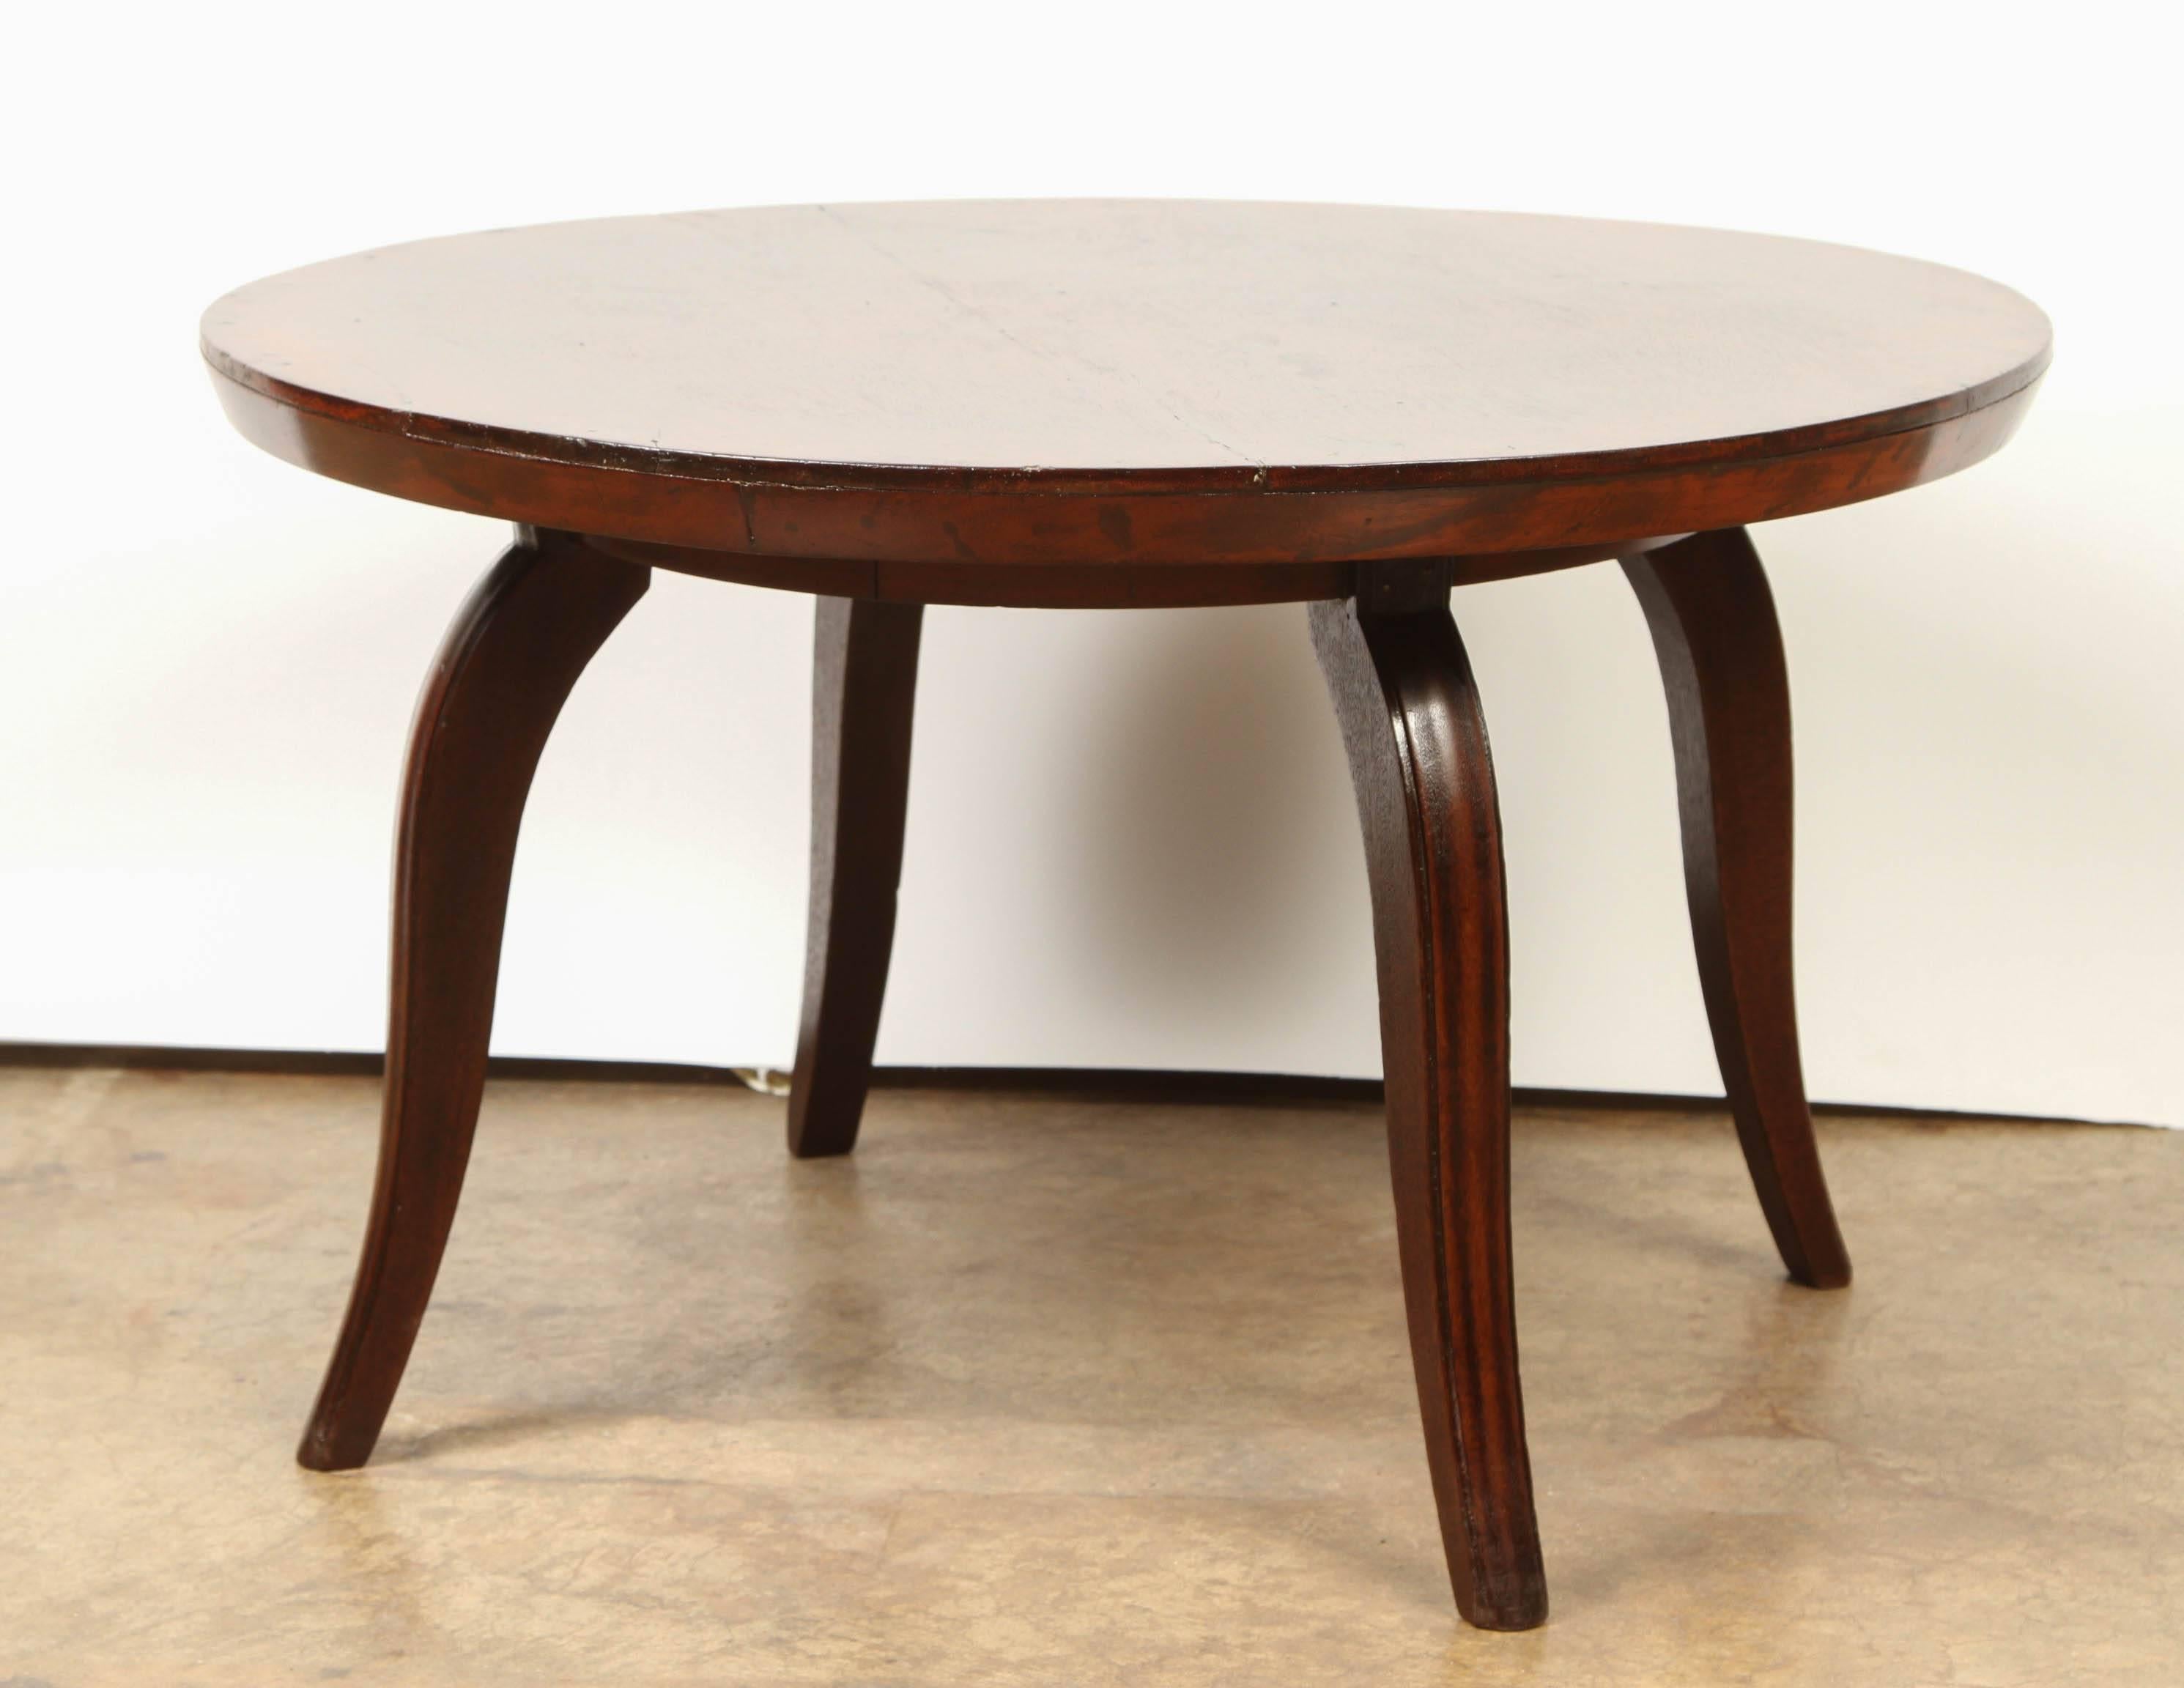 Table basse Art Déco de style colonial français en palissandre massif, avec un tablier fin et quatre pieds évasés.